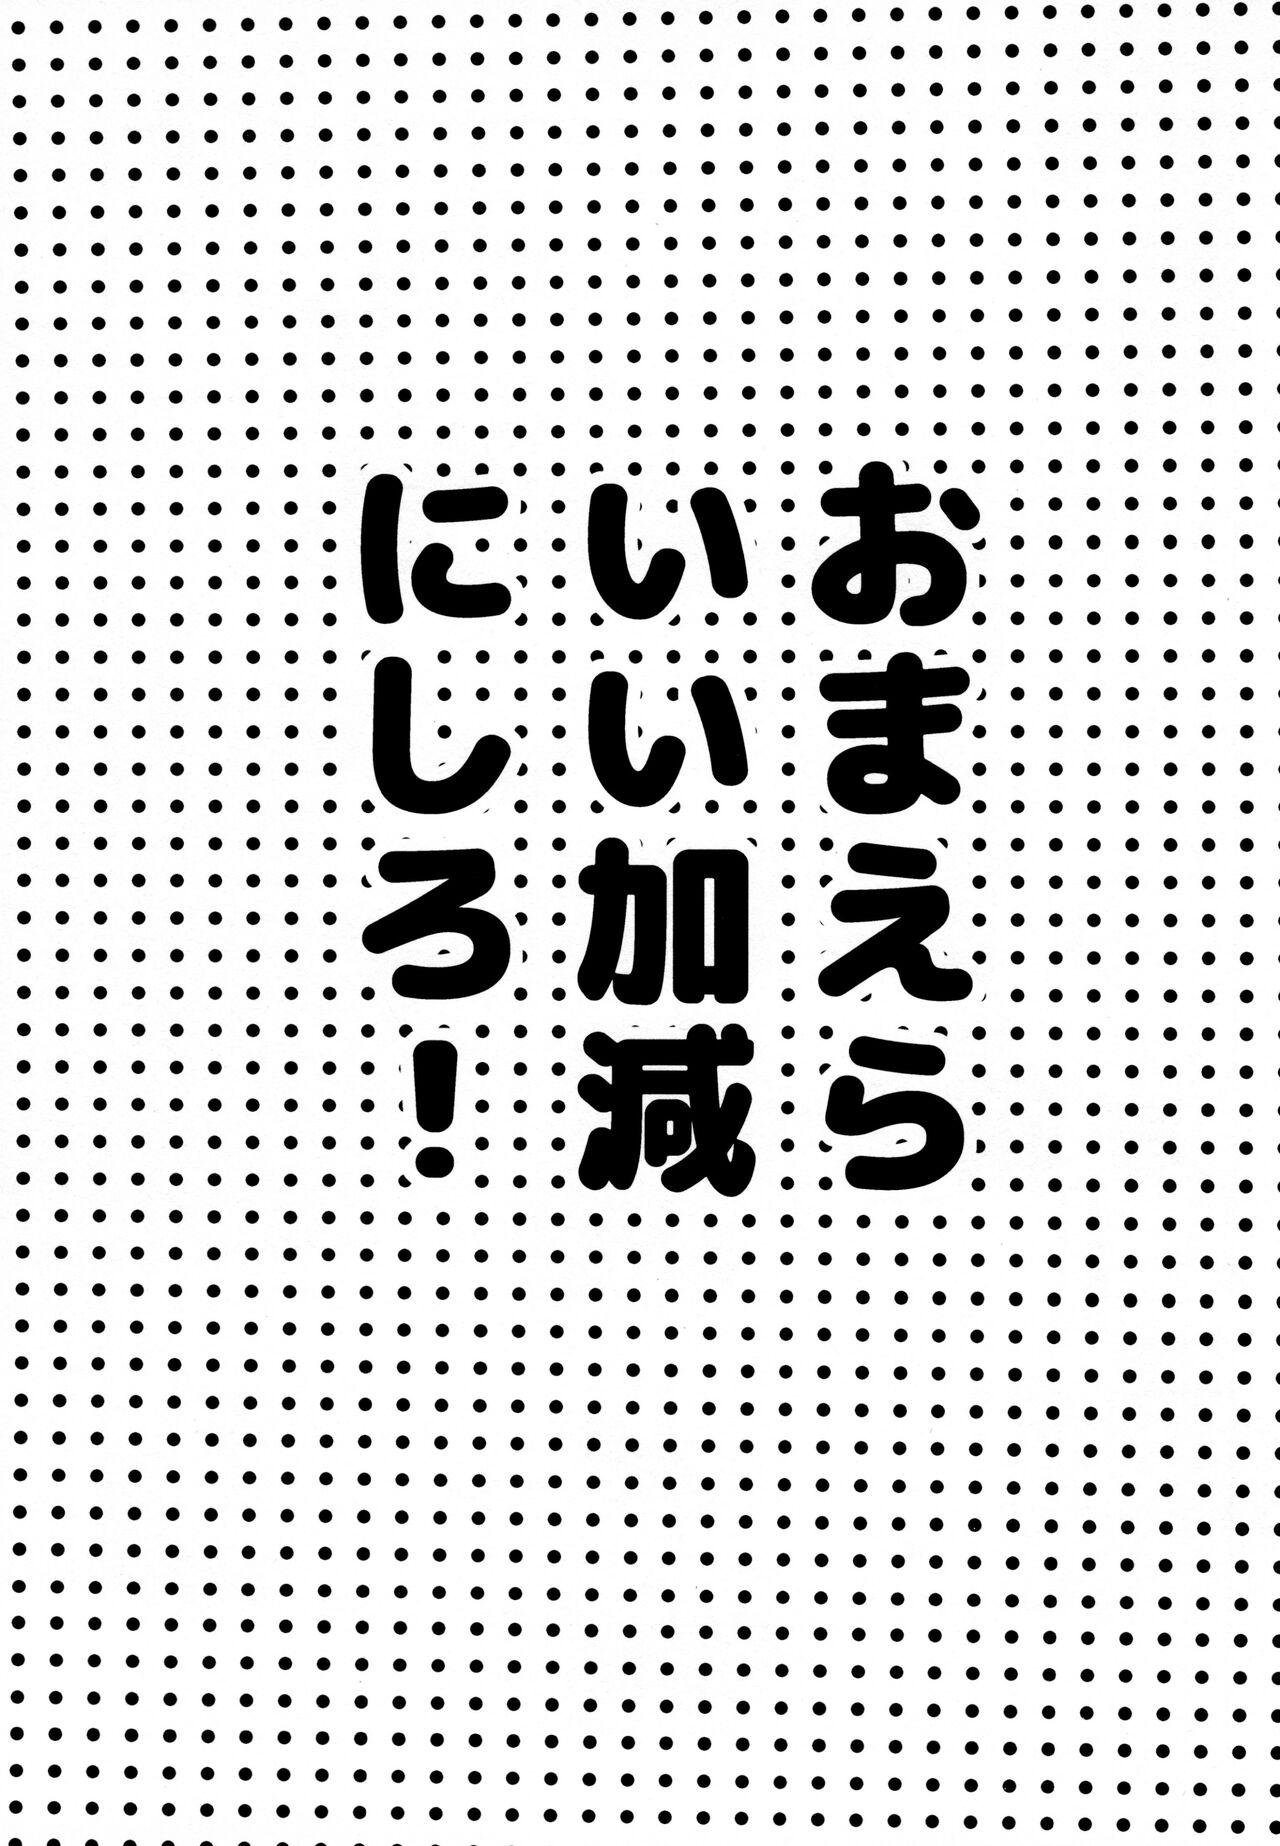 Balls Omae ira iikani ni Shiro! - Osomatsu-san Compilation - Picture 3